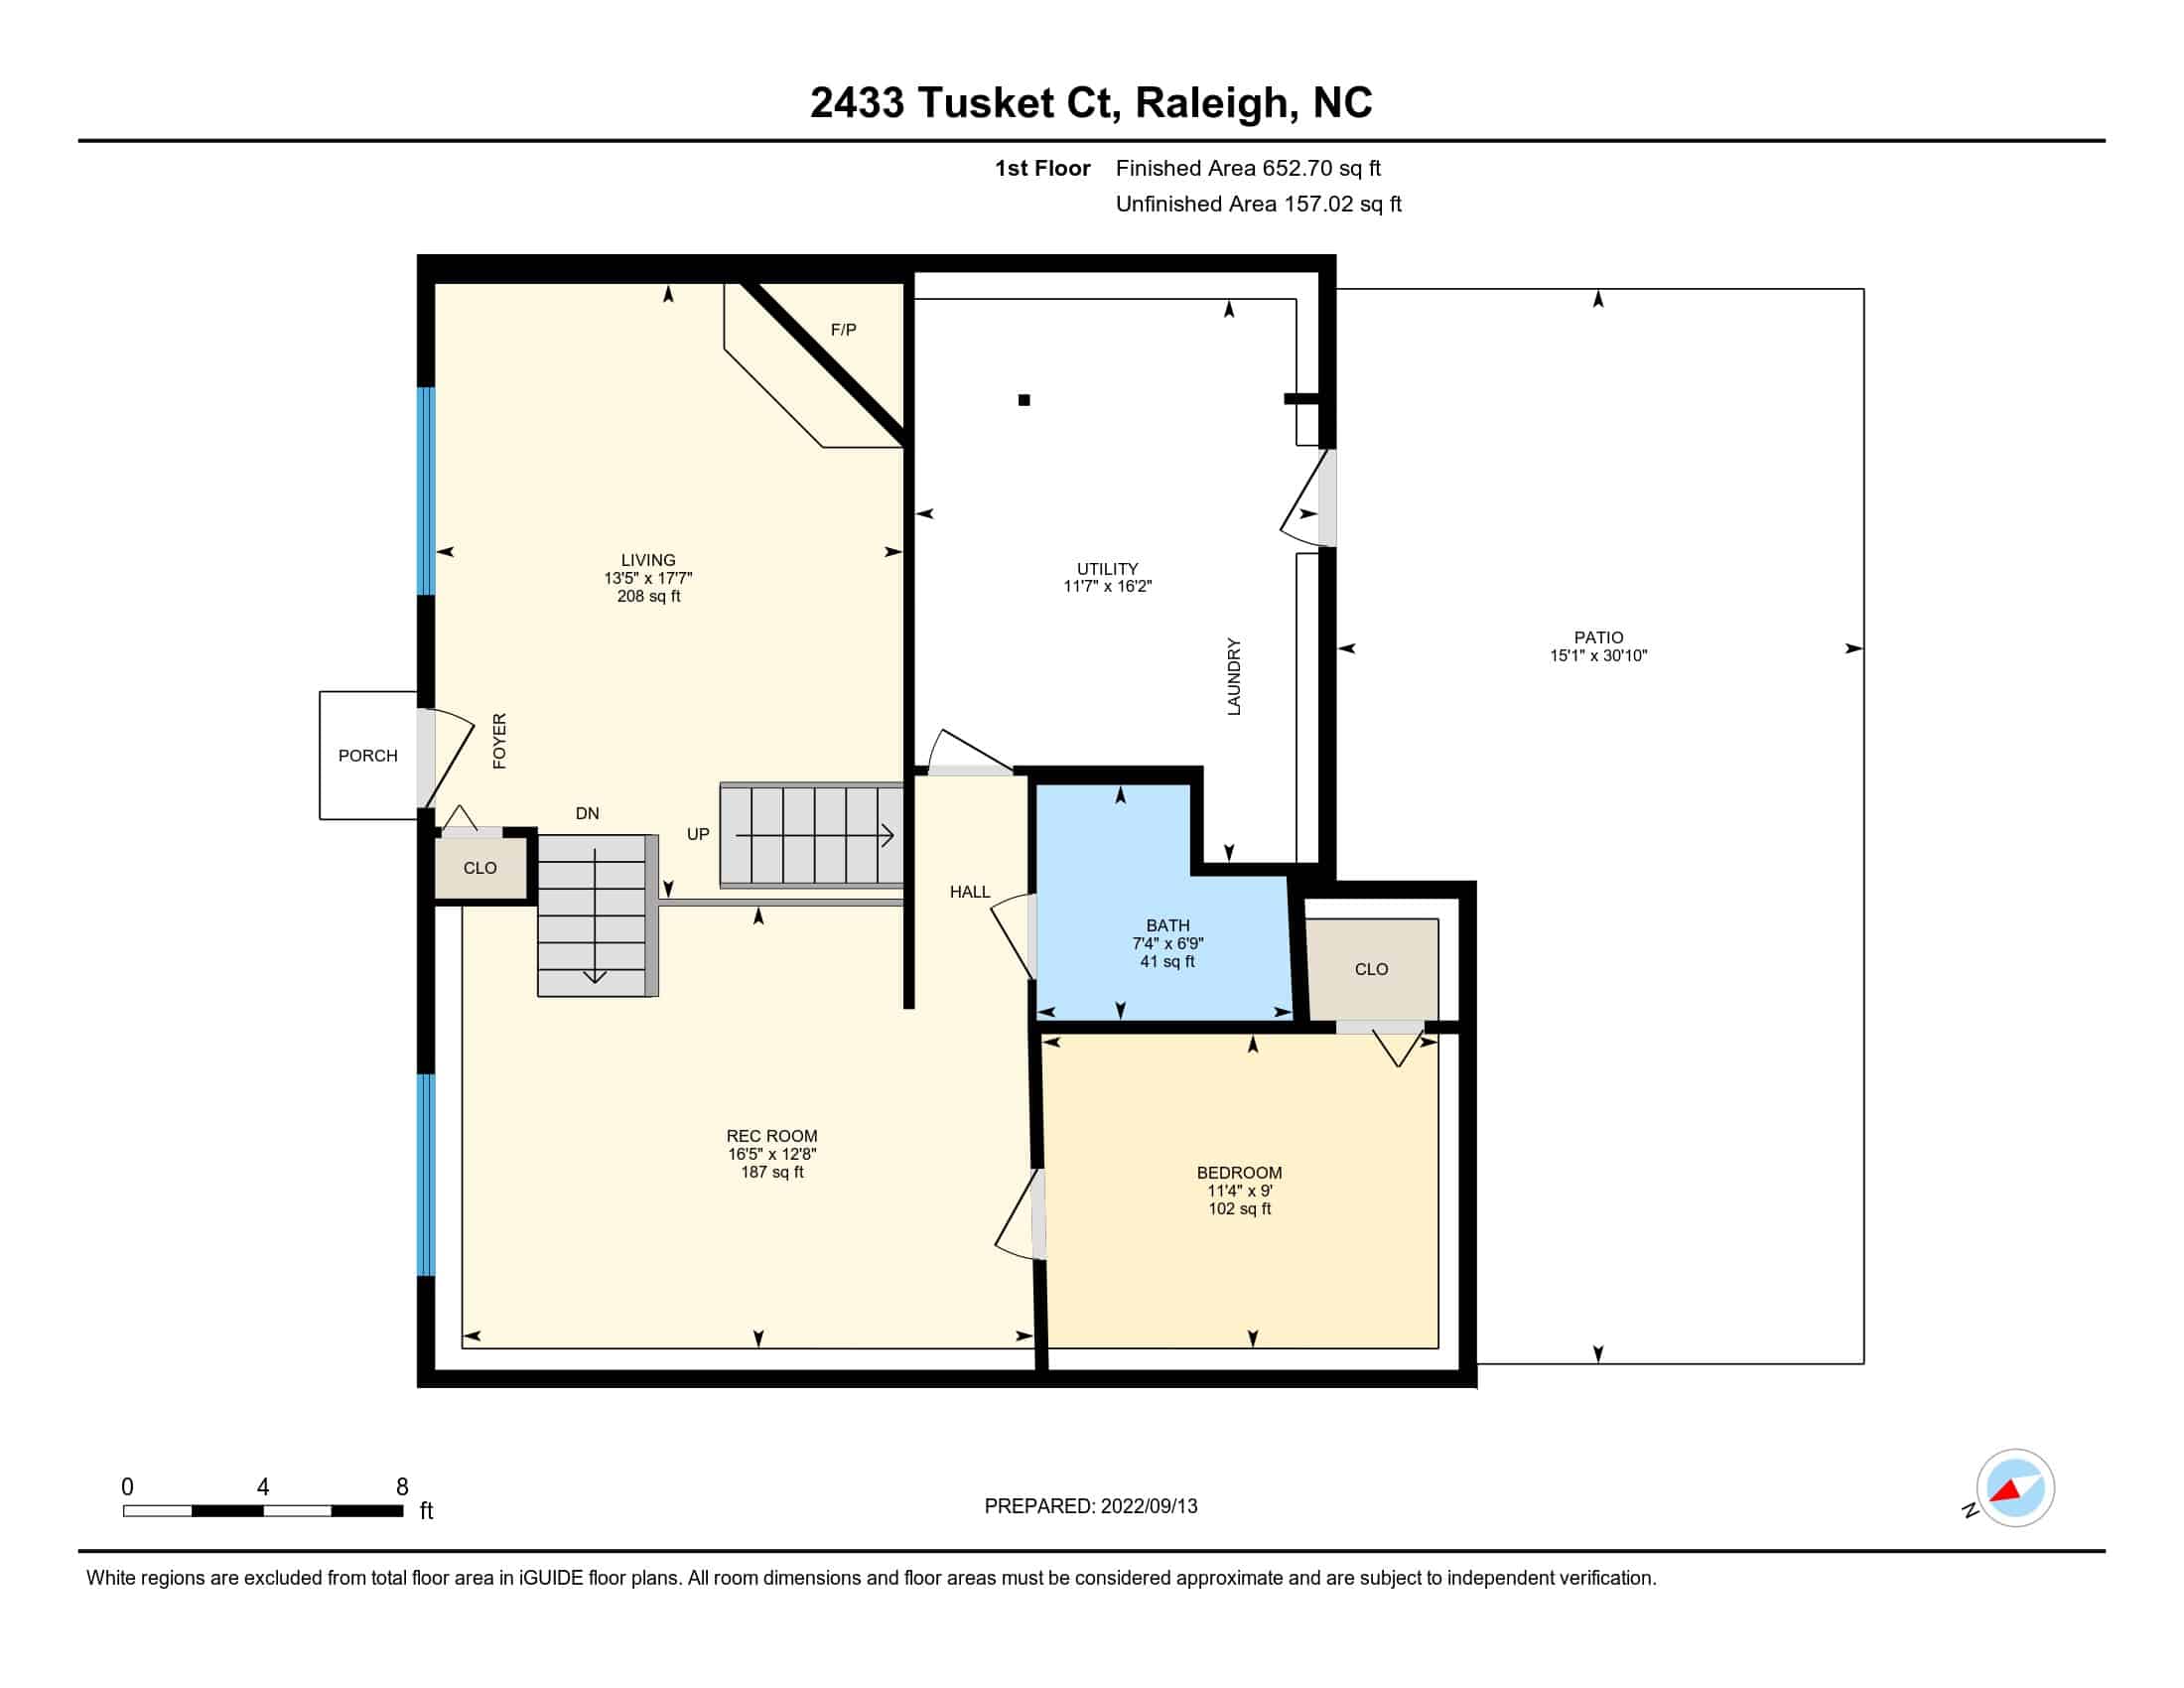 2433 Tusket Ct floor plan - 1st floor